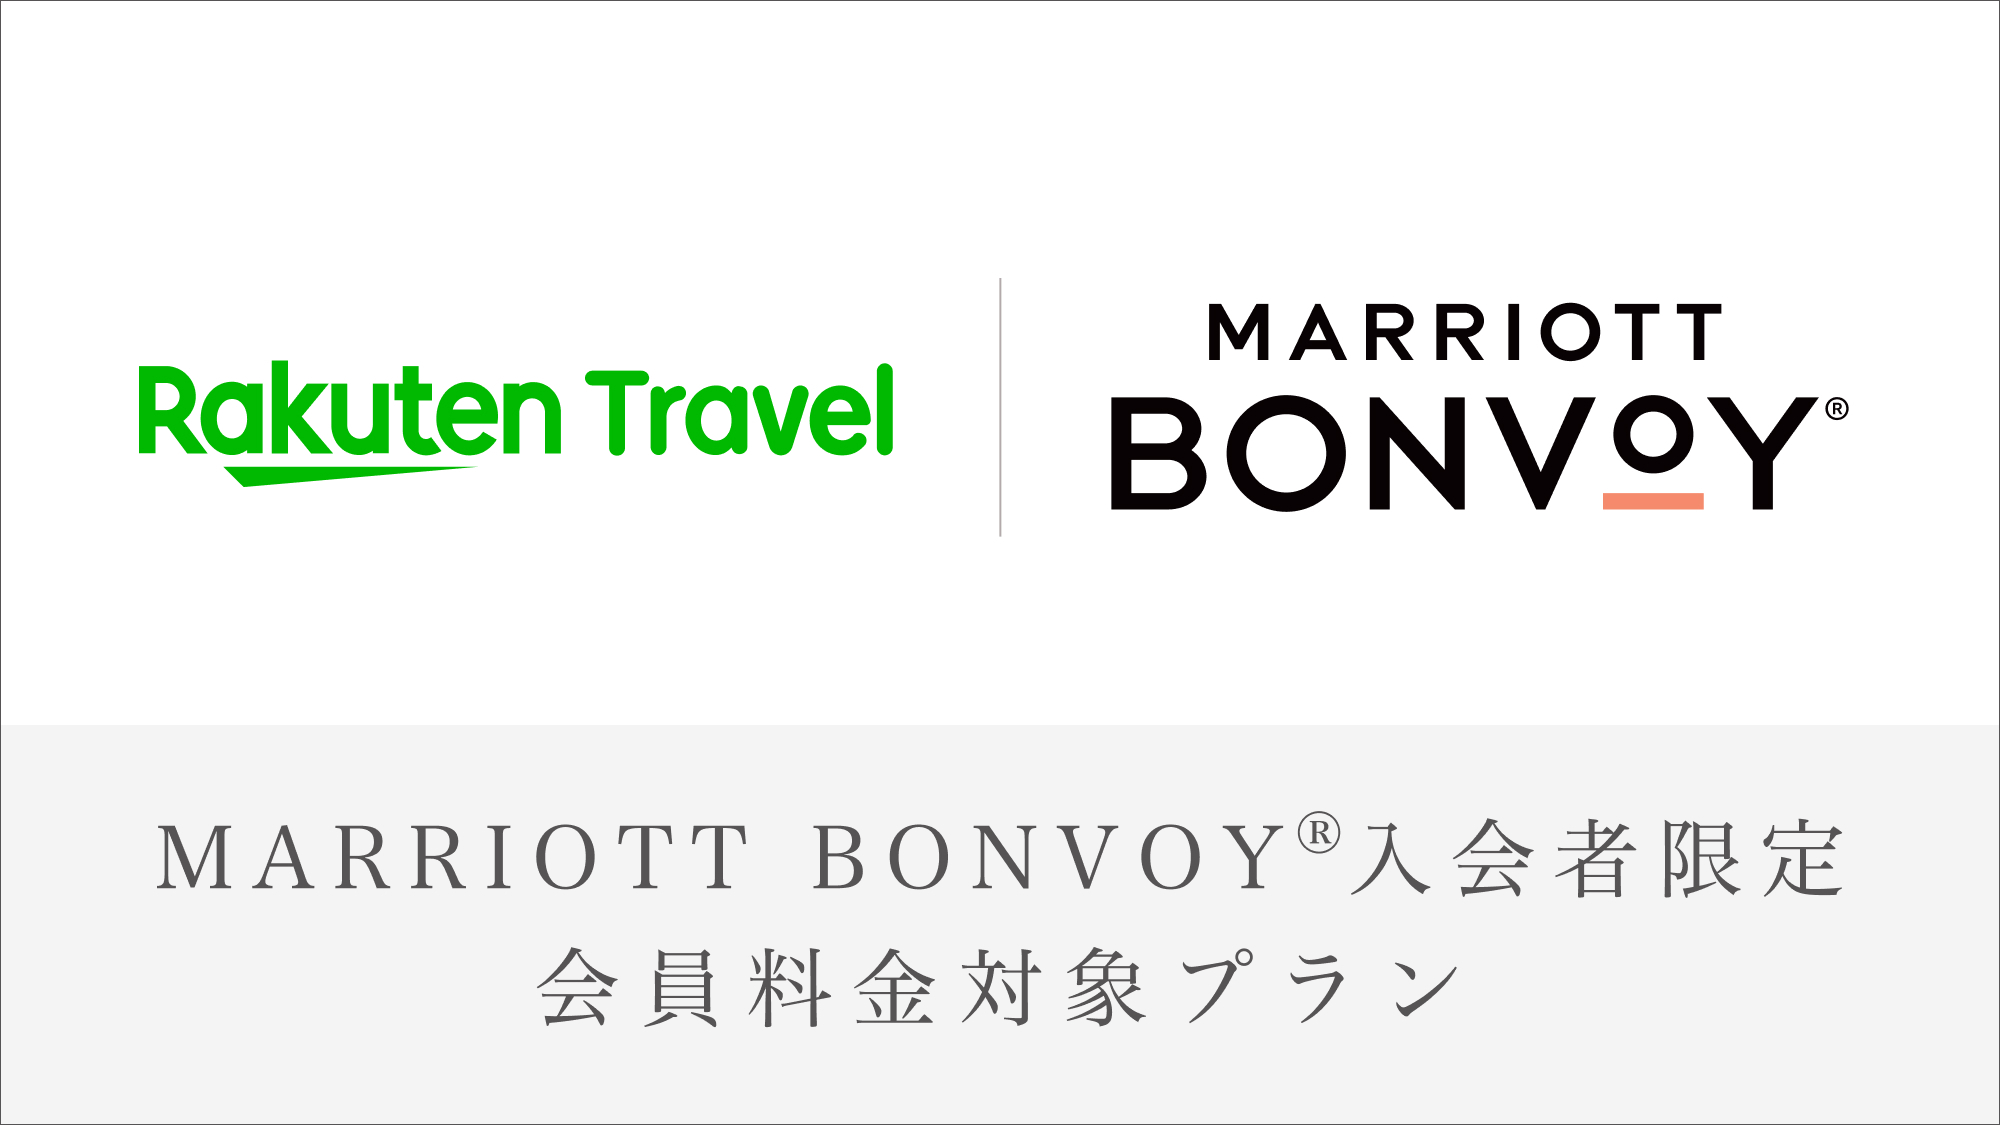 【Marriott Bonvoy会員対象プラン】ベストレート(お部屋のみ)